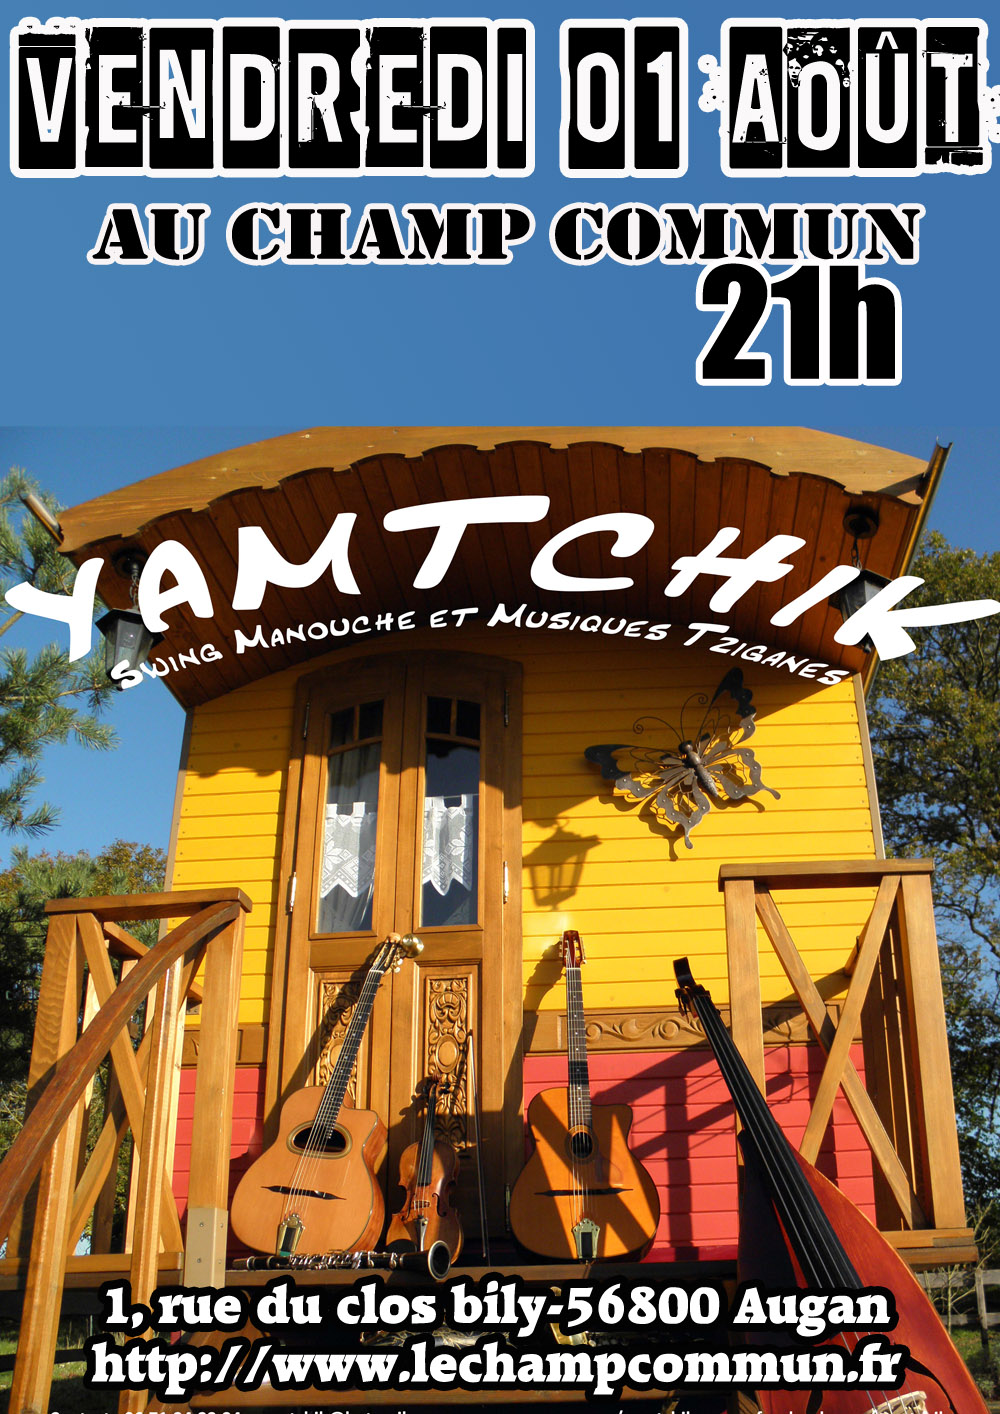 Vendredi 01 Août à 21 au Champ Commun- Swing manouche avec Yamtchik